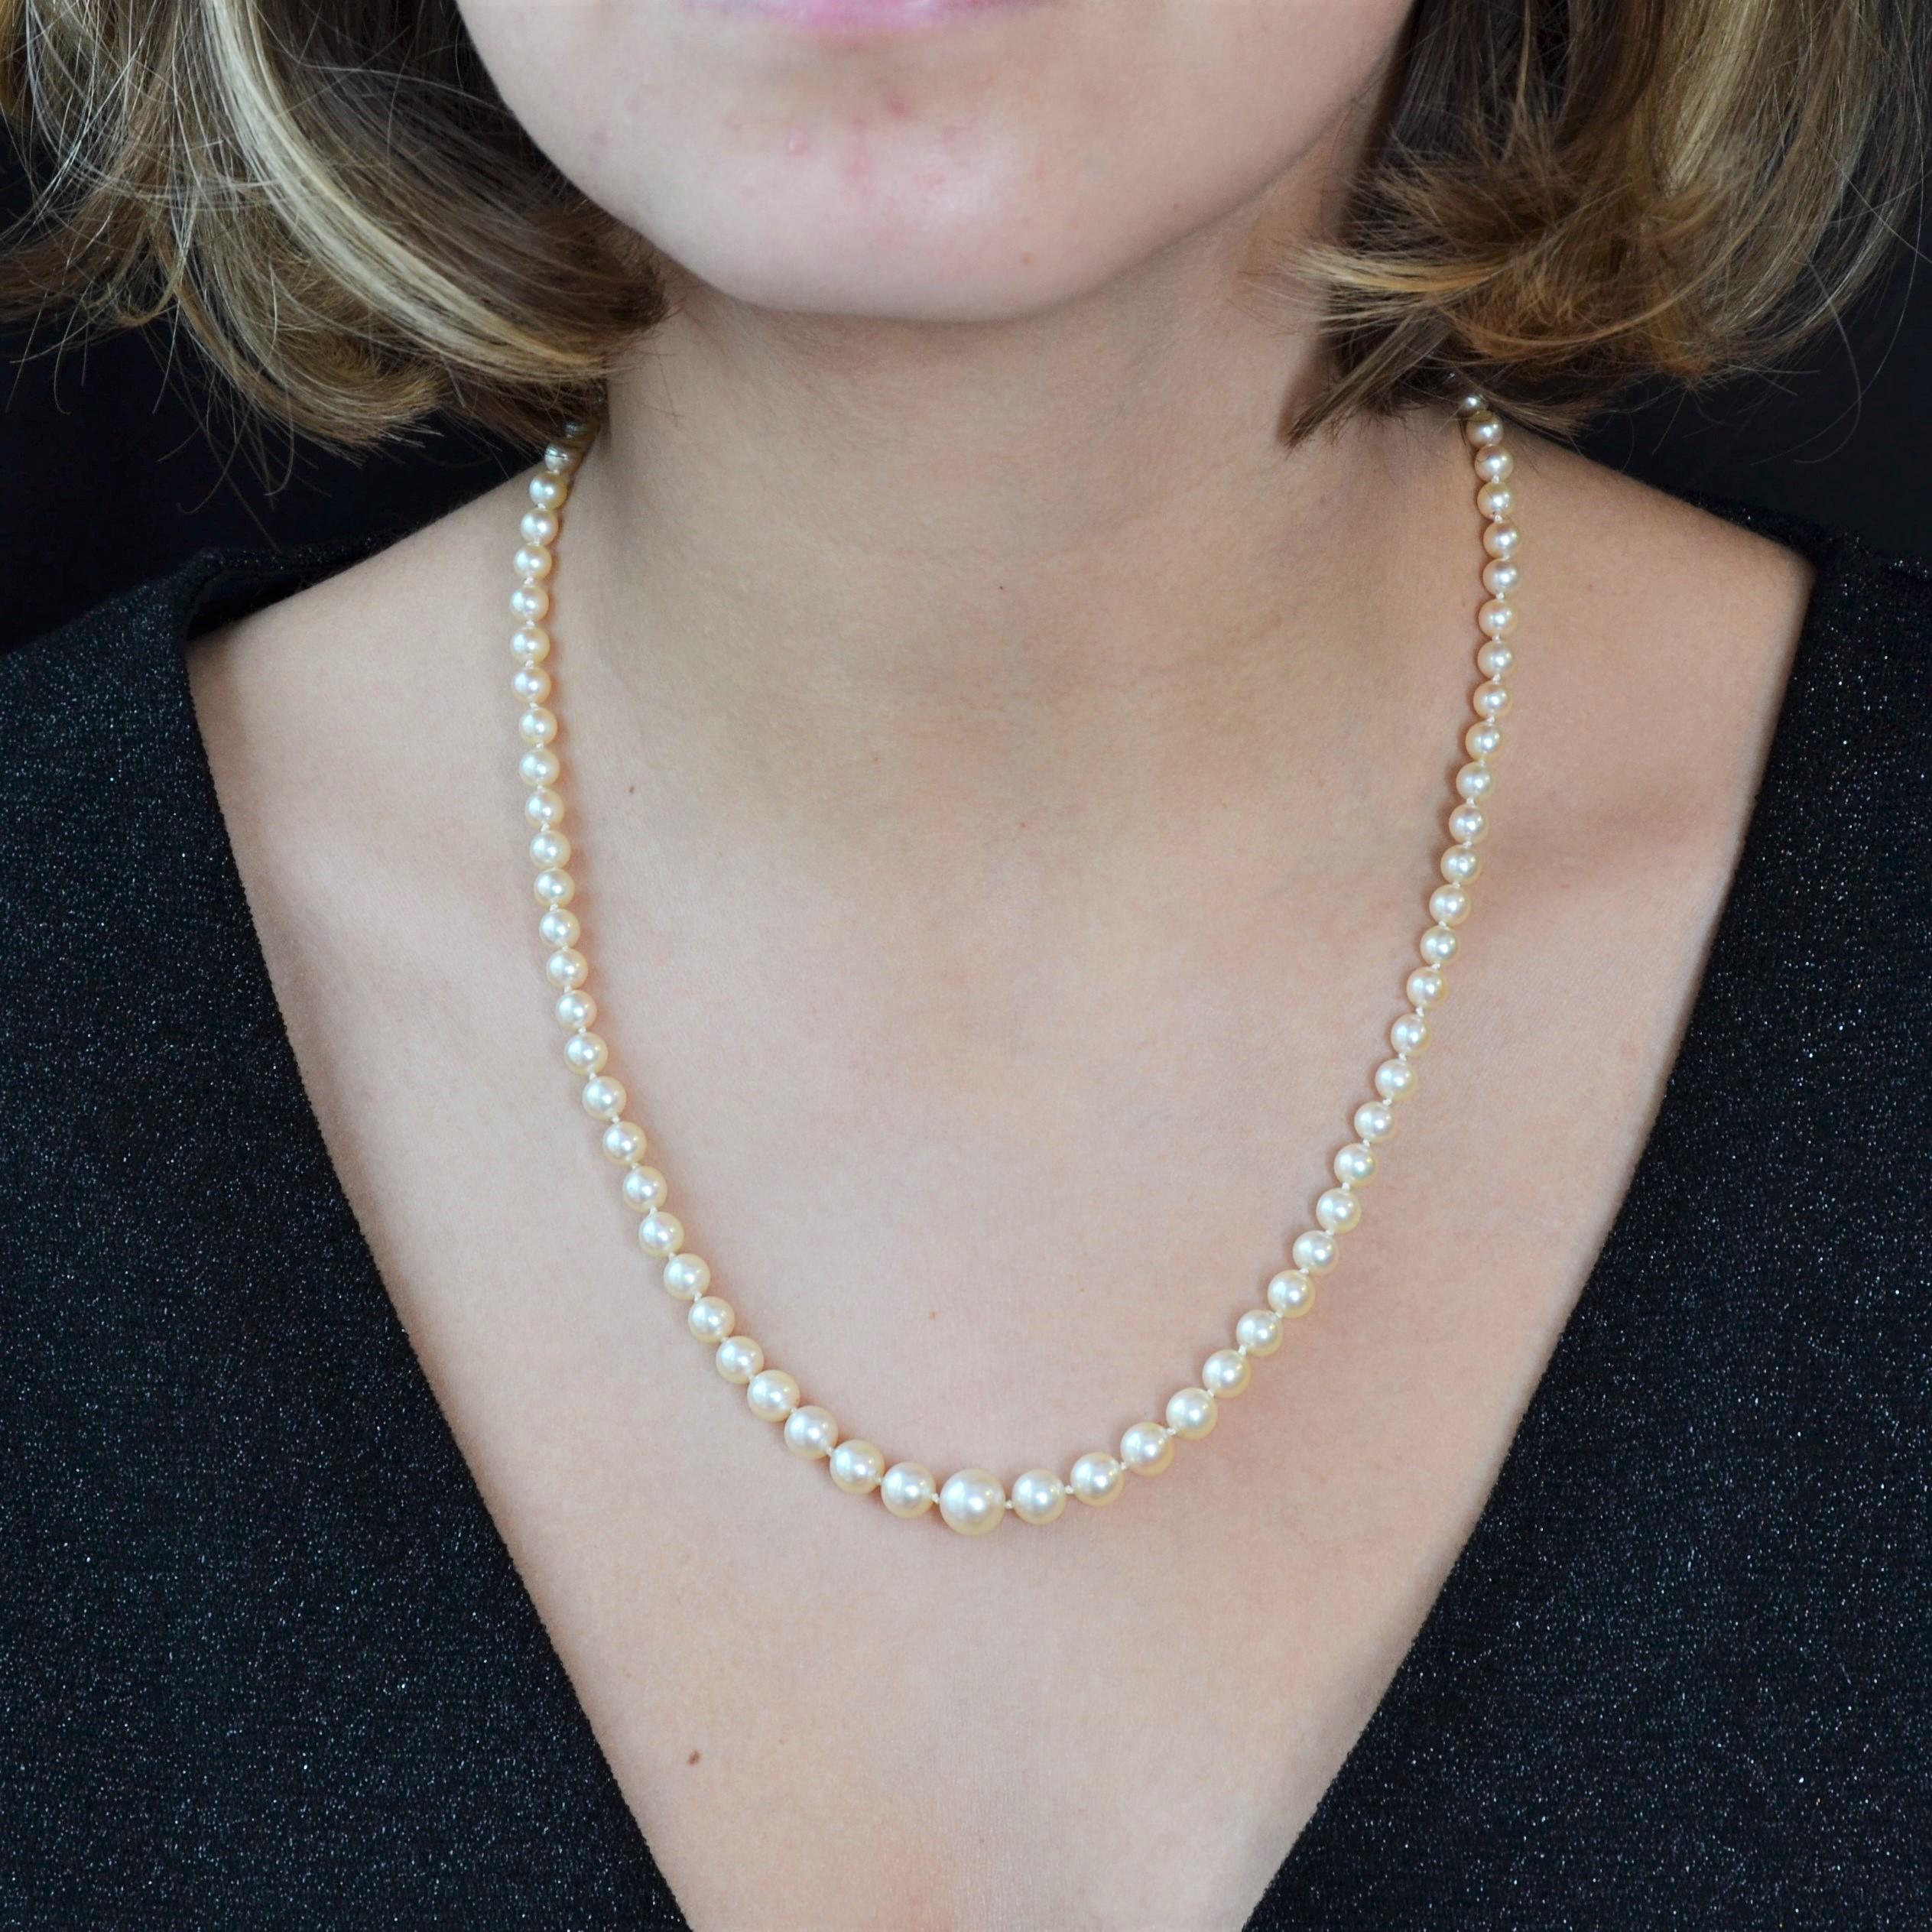  Collier de perles de culture dans le dégradé blanc orient, de forme ronde et en chute.
Le fermoir est en or blanc 18 carats, à cliquet.
Diamètre des perles : de 4.5/5 mm à 8/8.5 mm.
Longueur : 50 cm environ.
Poids total du Jewell : 18,8 g